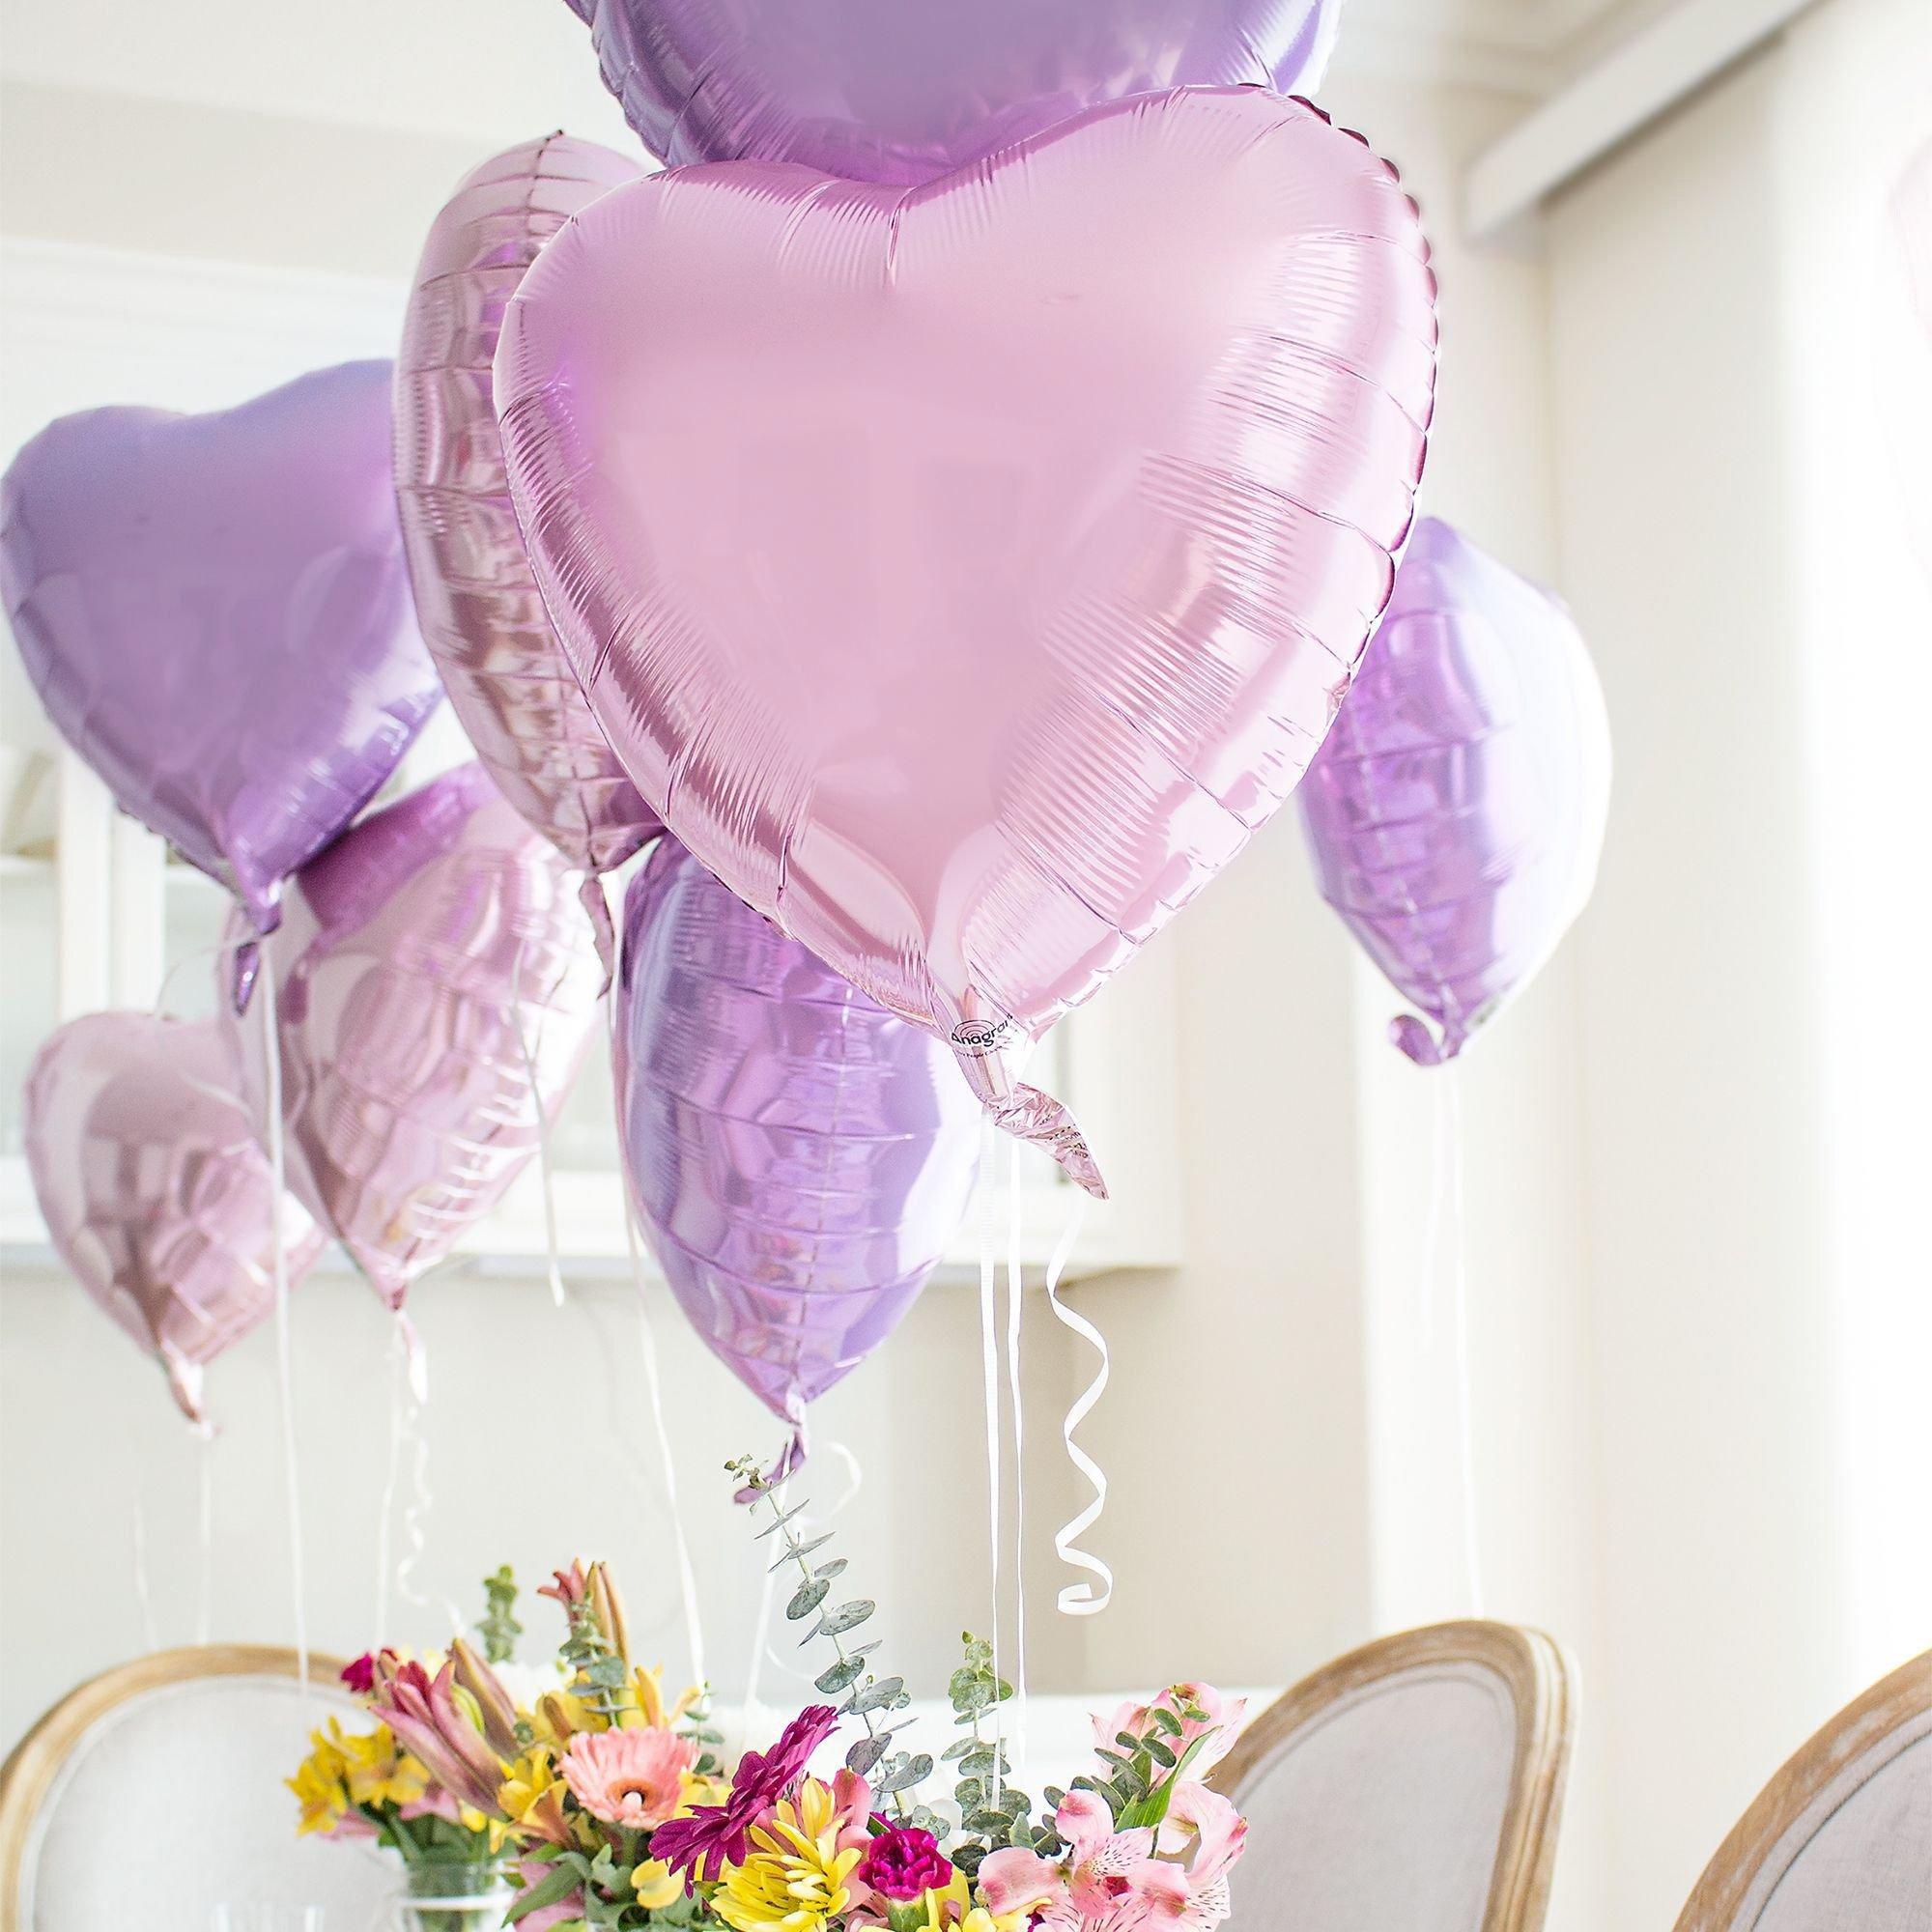 17in Purple Heart Foil Balloon